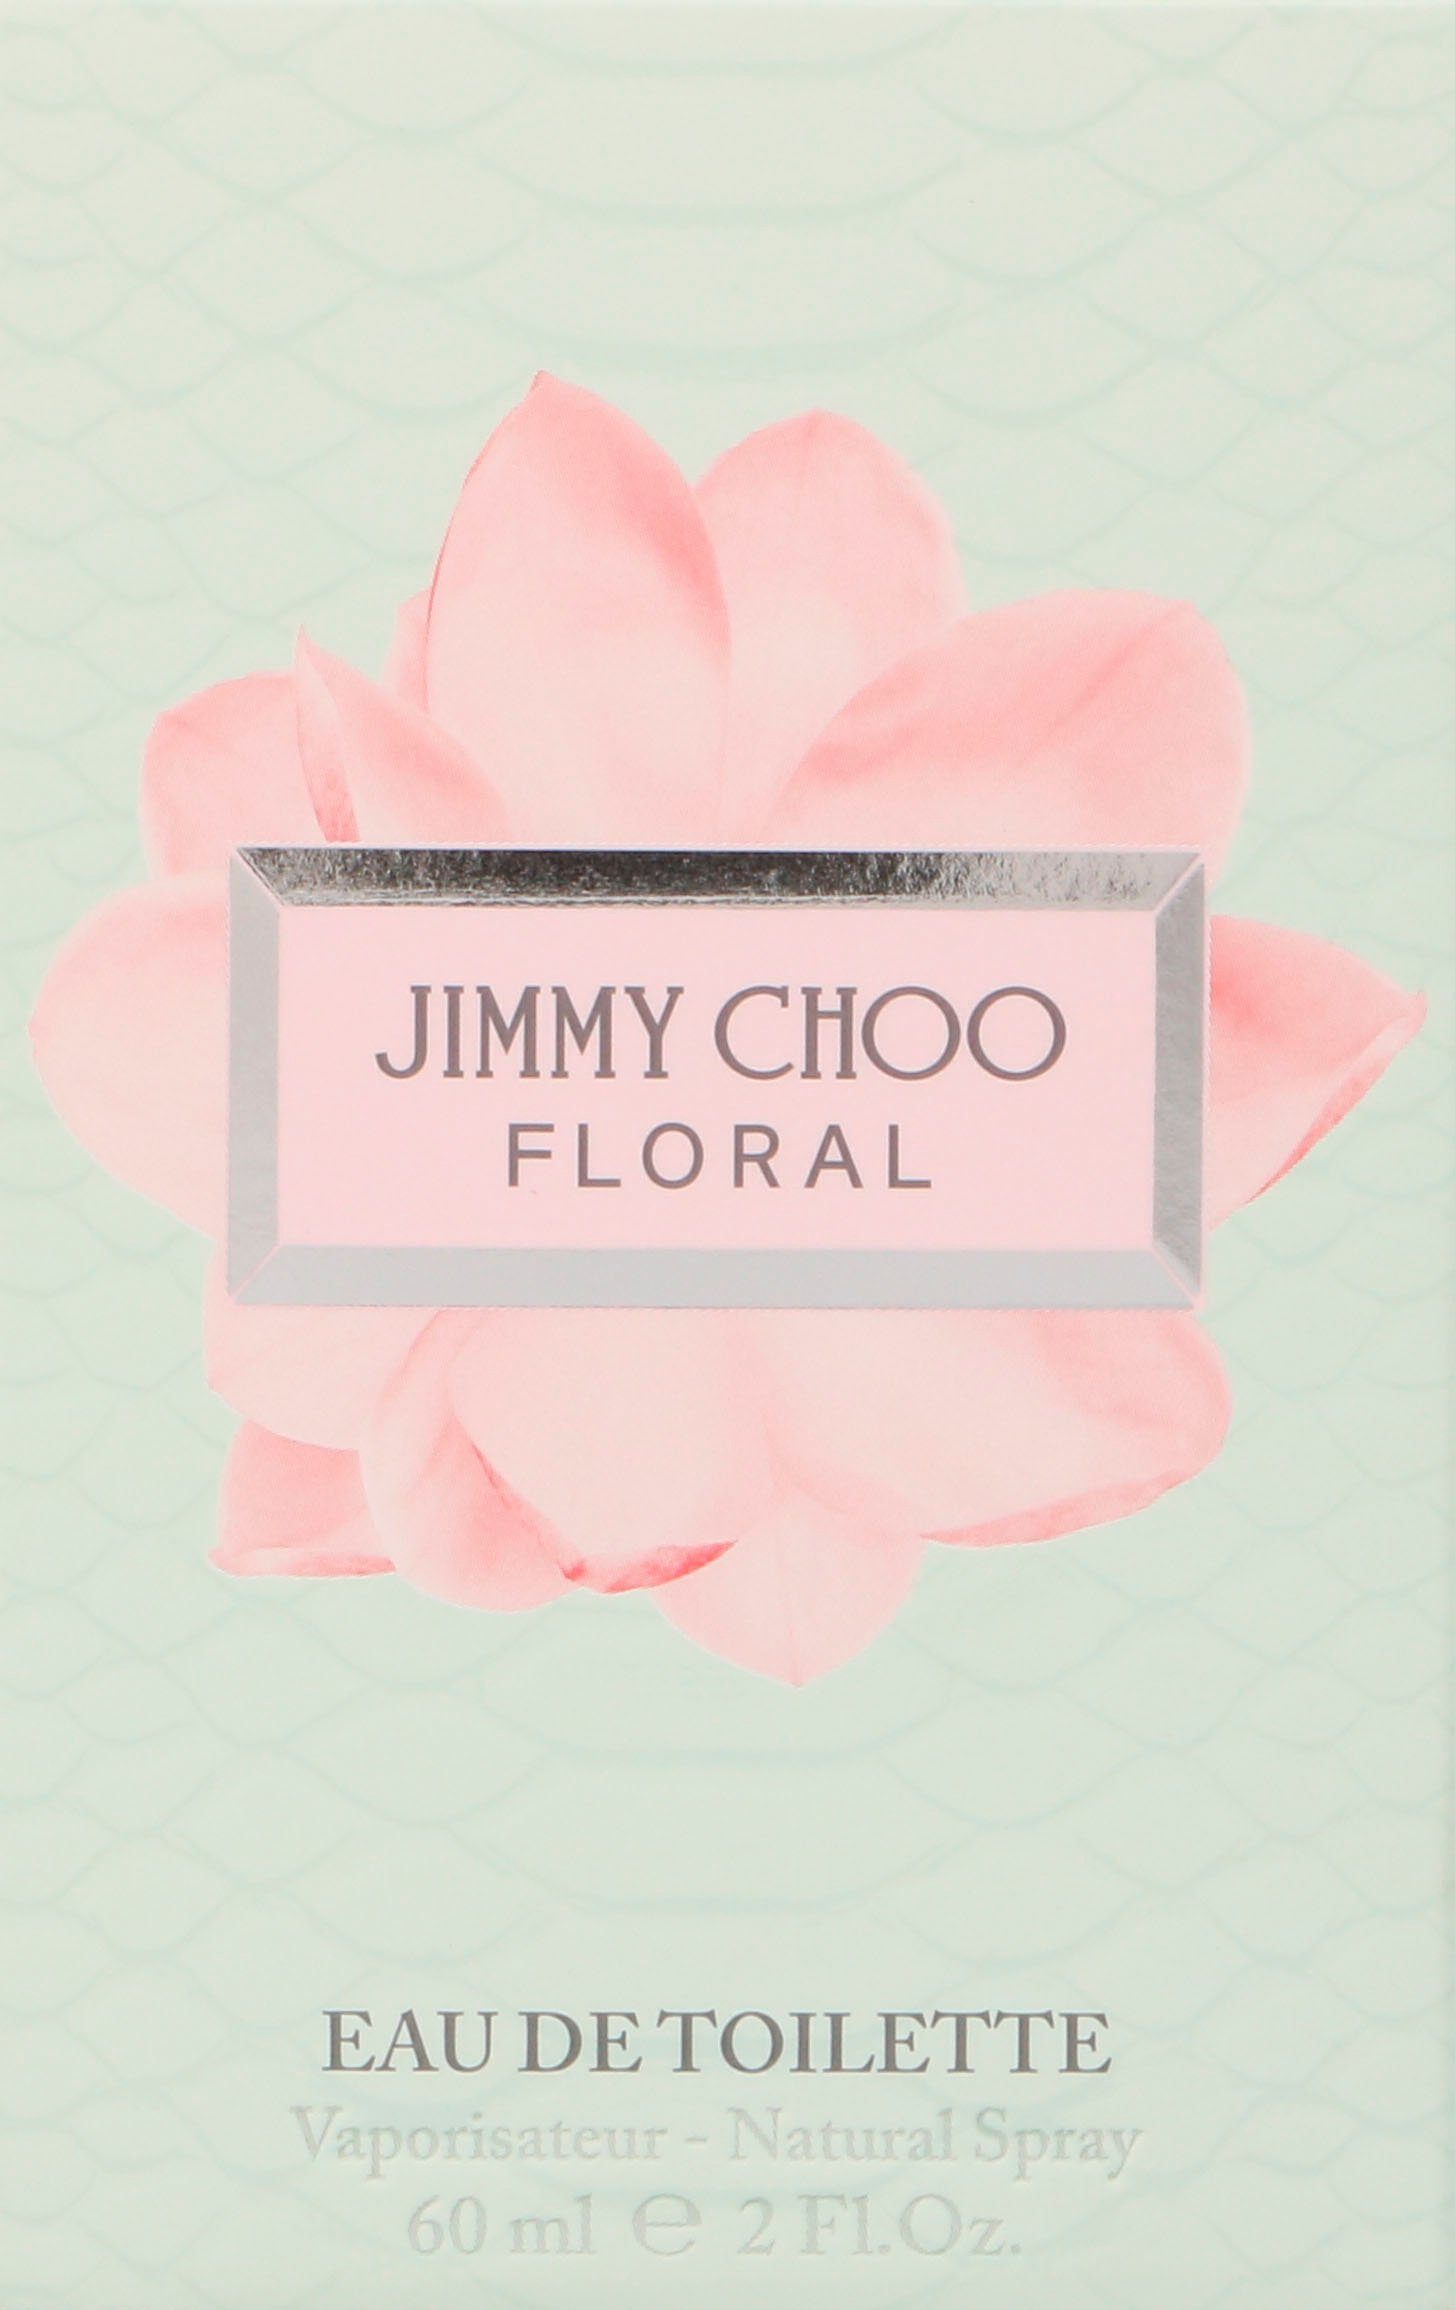 JIMMY CHOO Eau Toilette de Floral